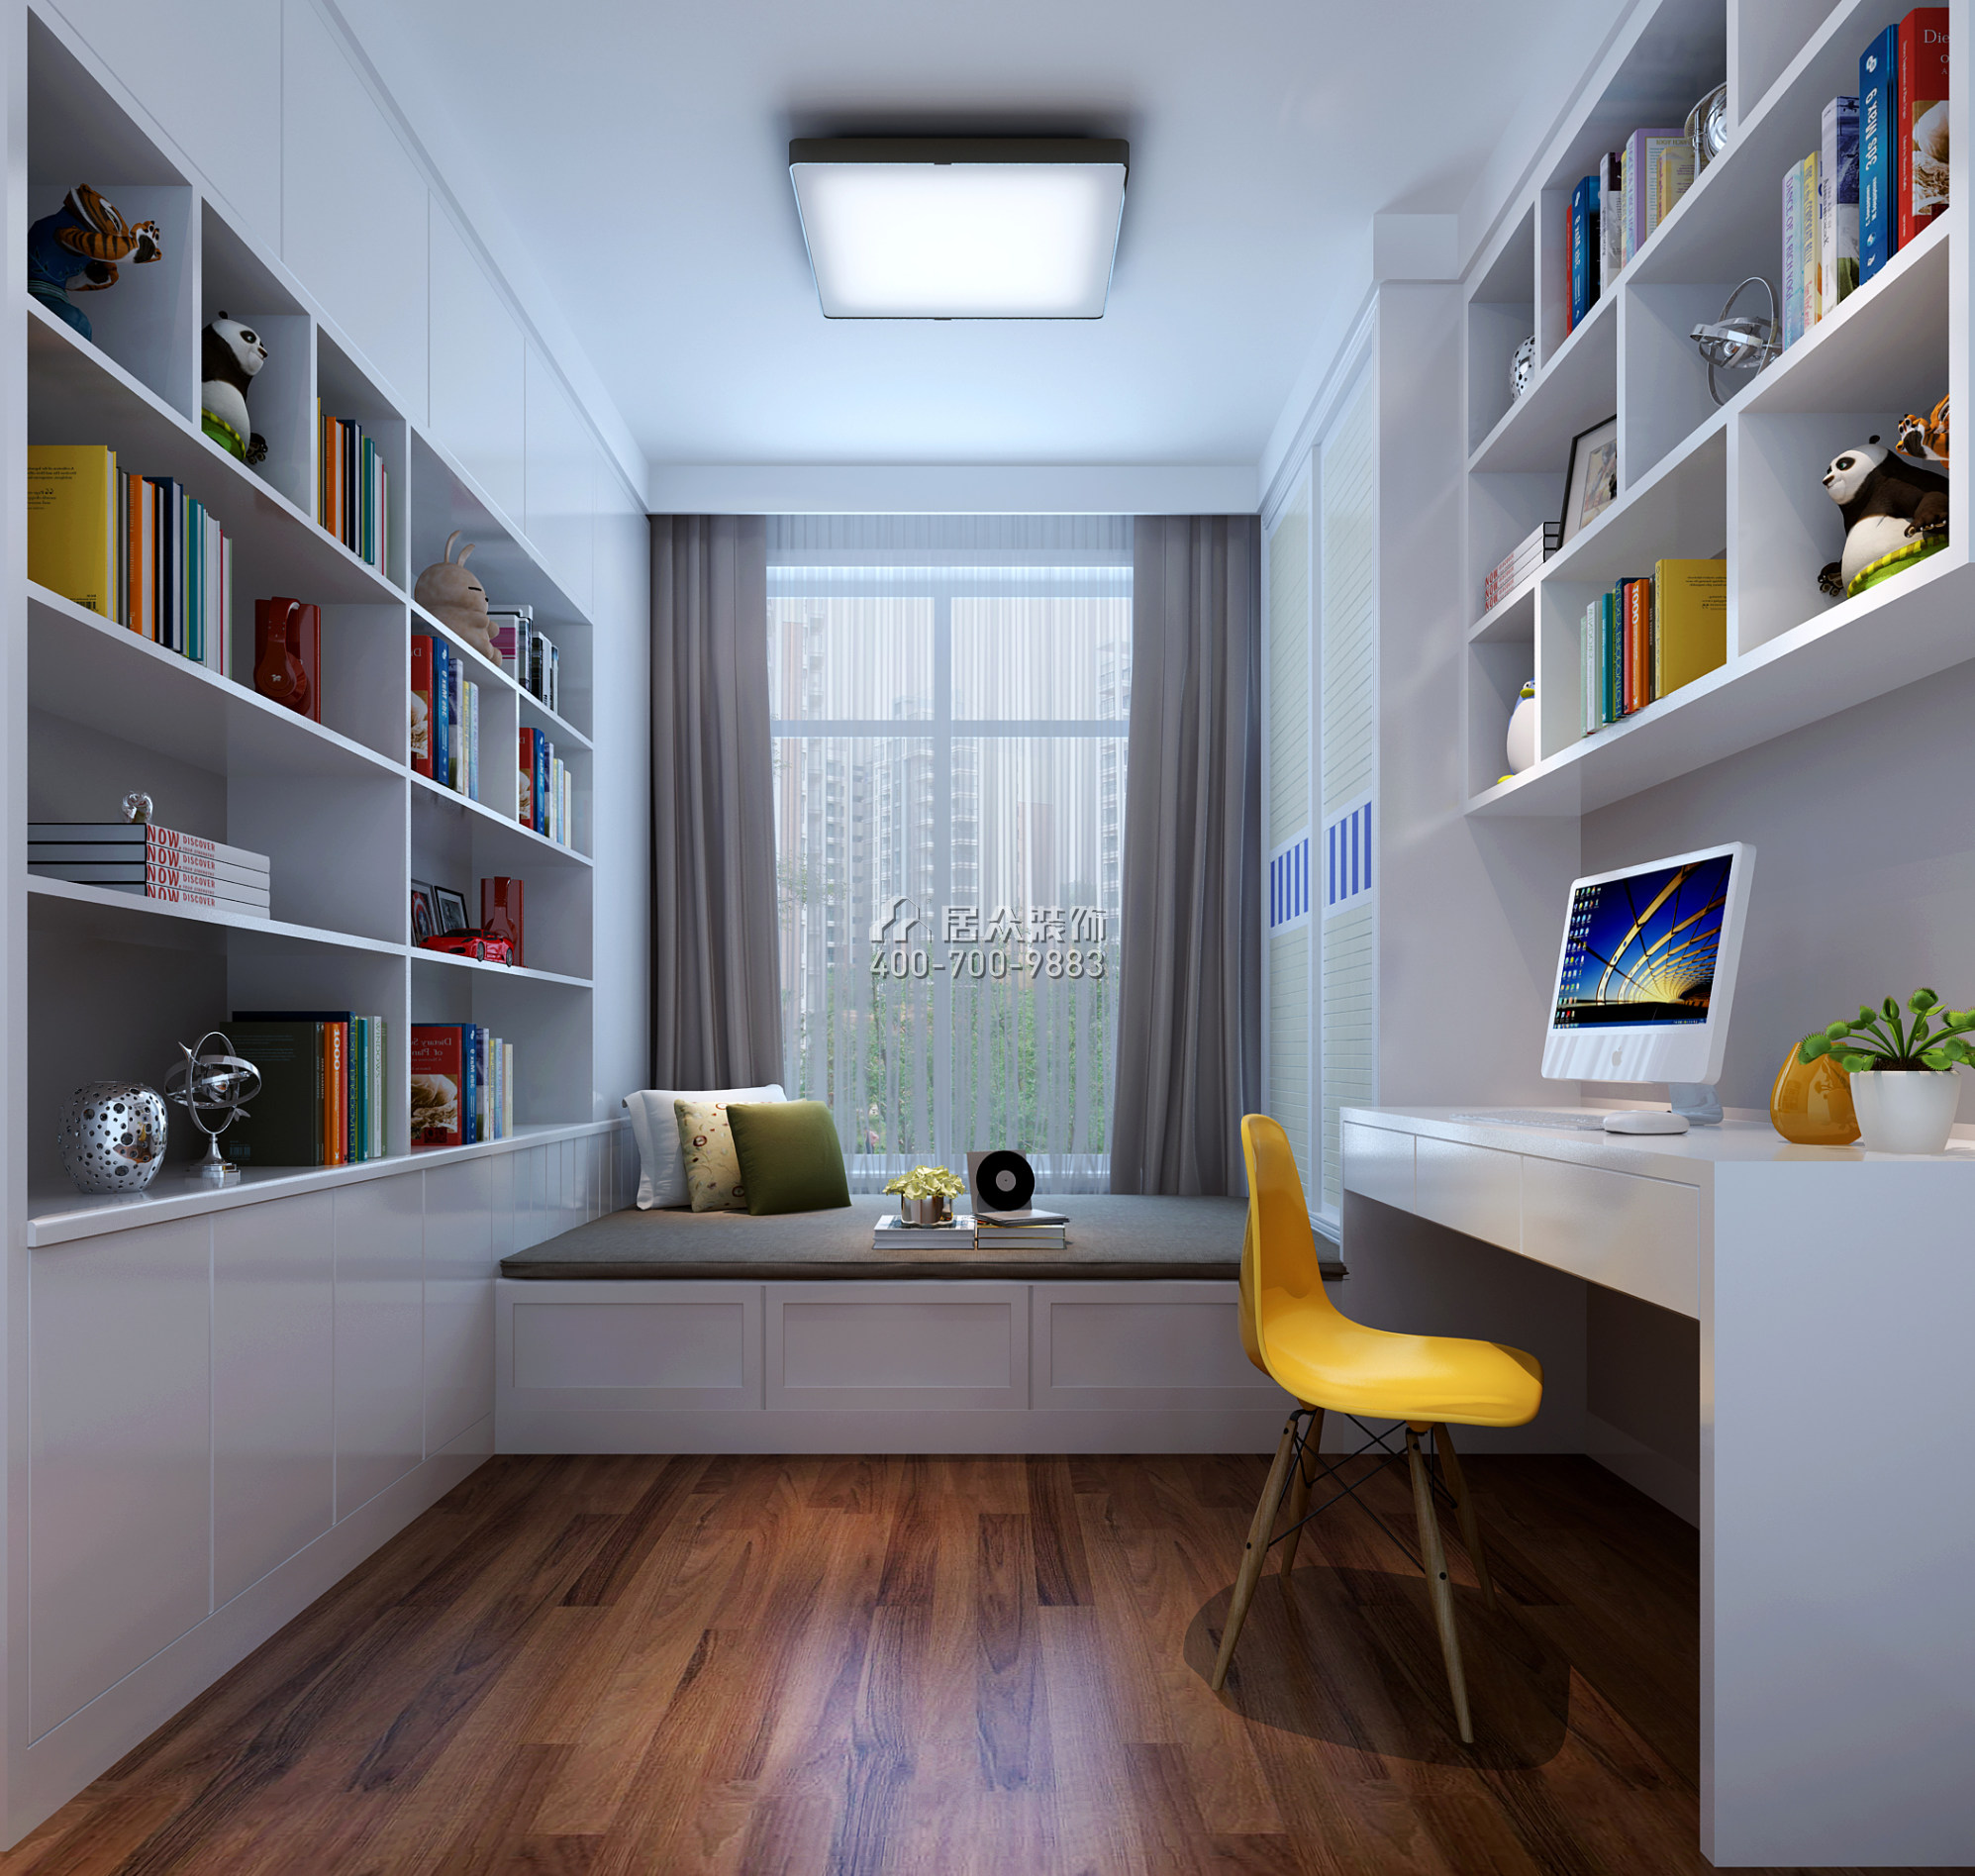 華盛·西薈城4期89平方米歐式風格平層戶型臥室書房一體裝修效果圖